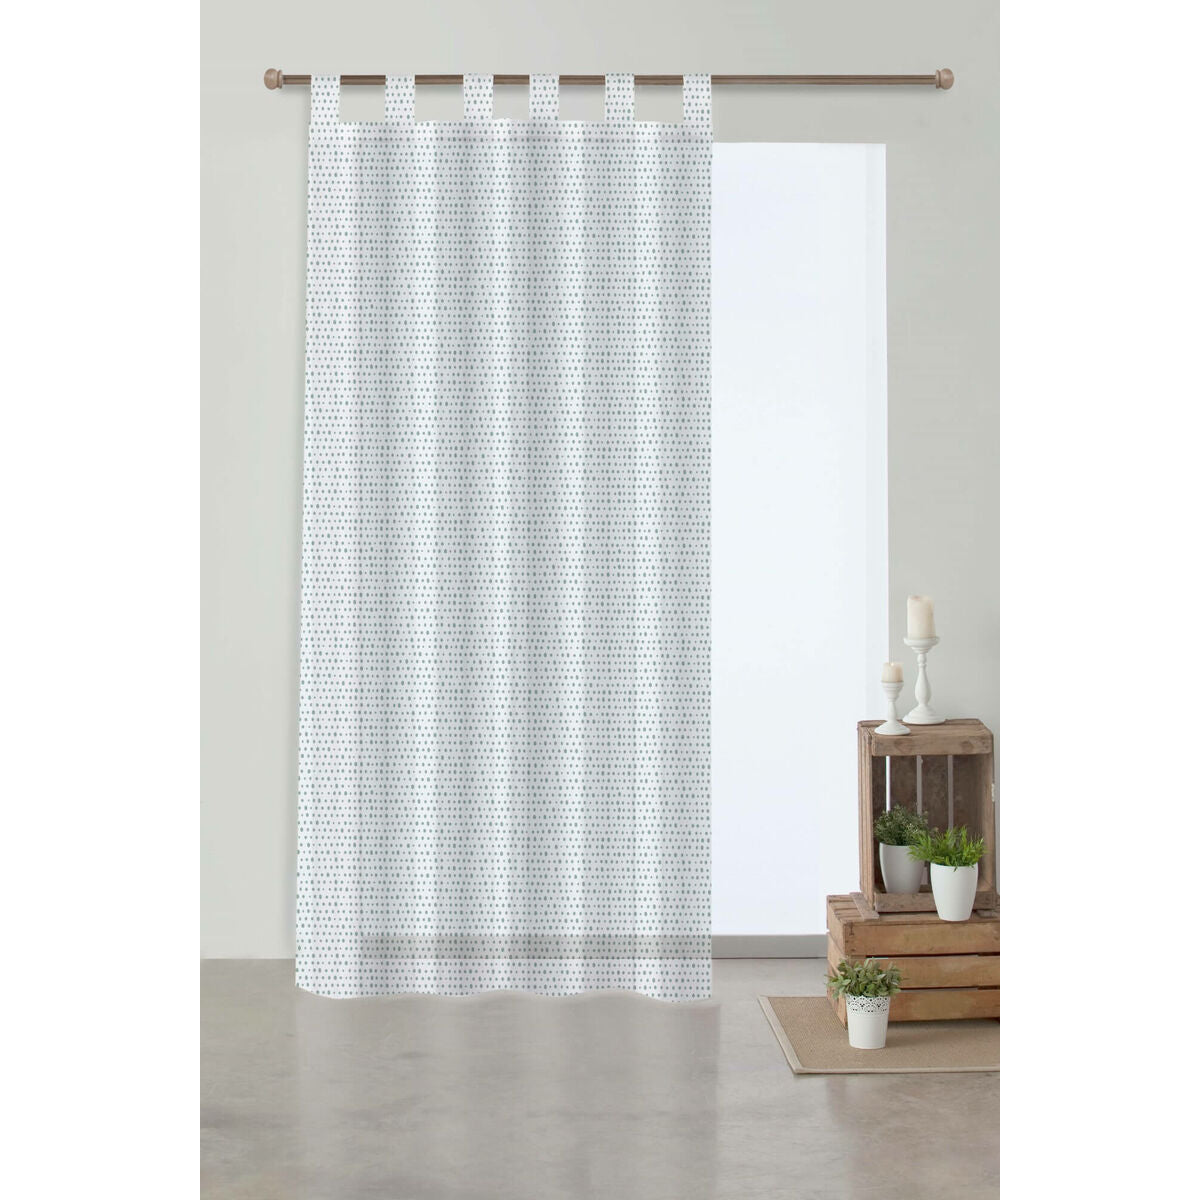 Curtain Decolores Jeddah 150 x 270 cm